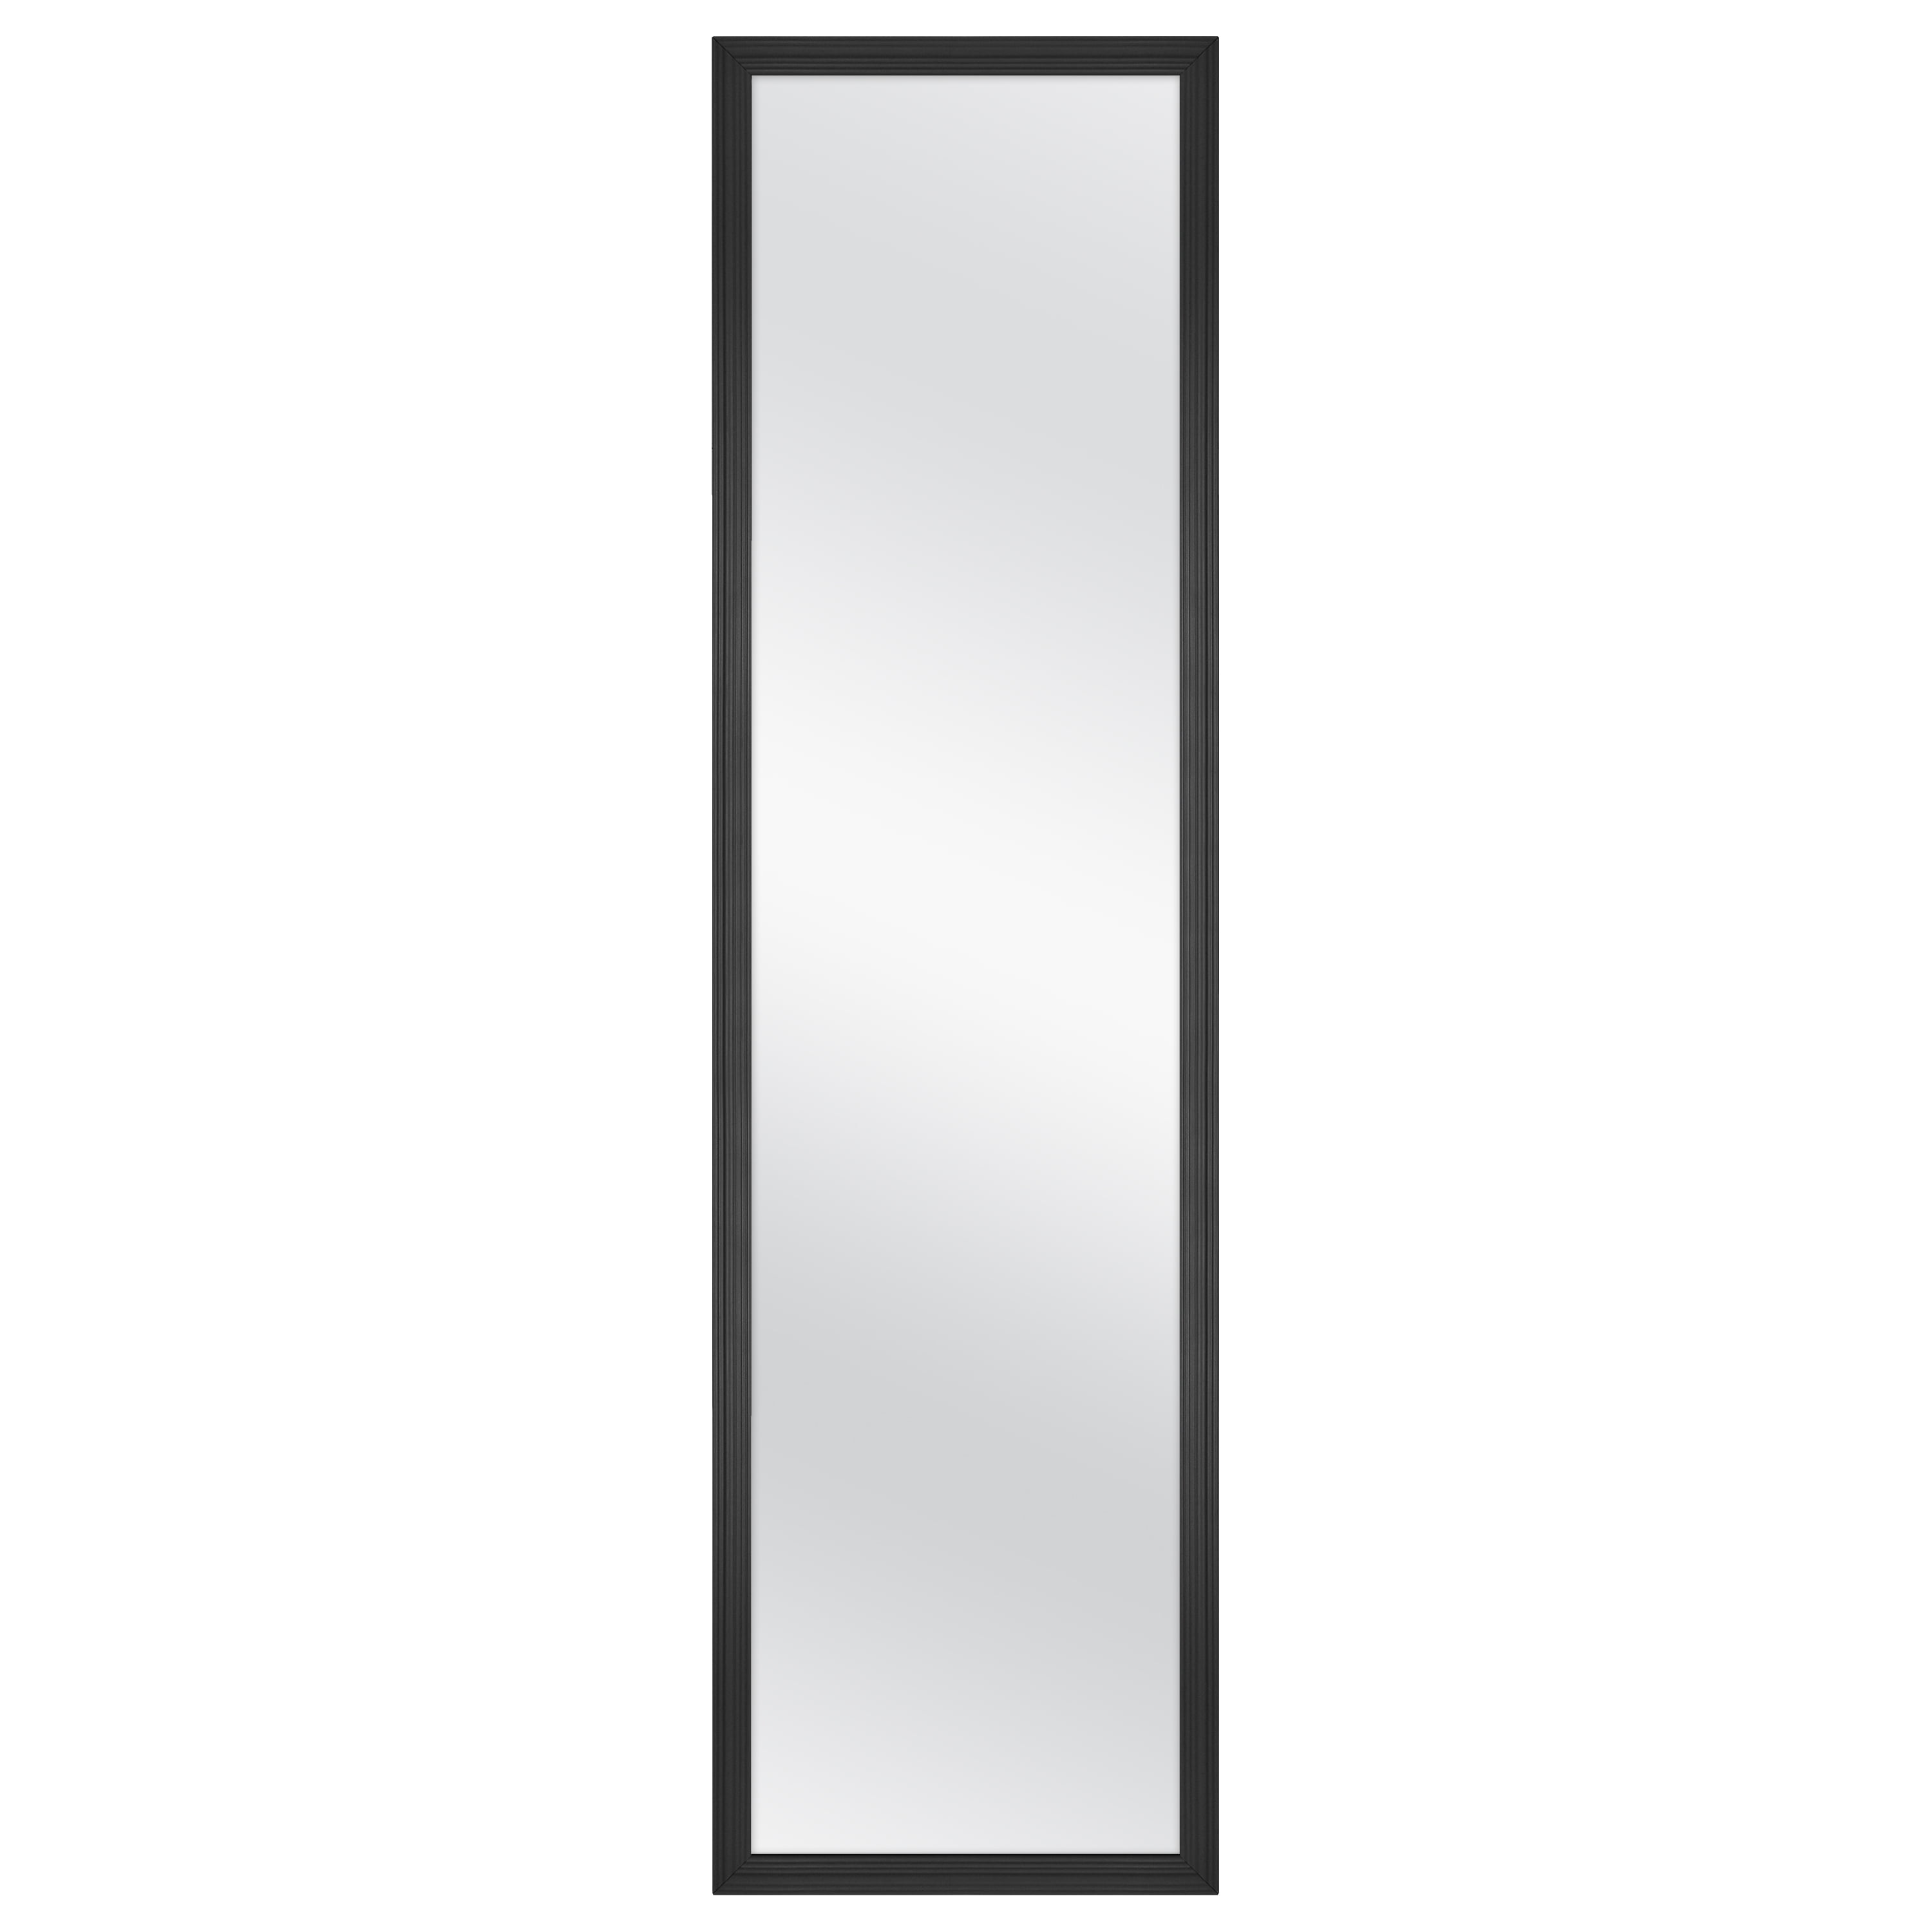 Mainstays 13 inch x 49 inch Black Rectangle Door Mirror